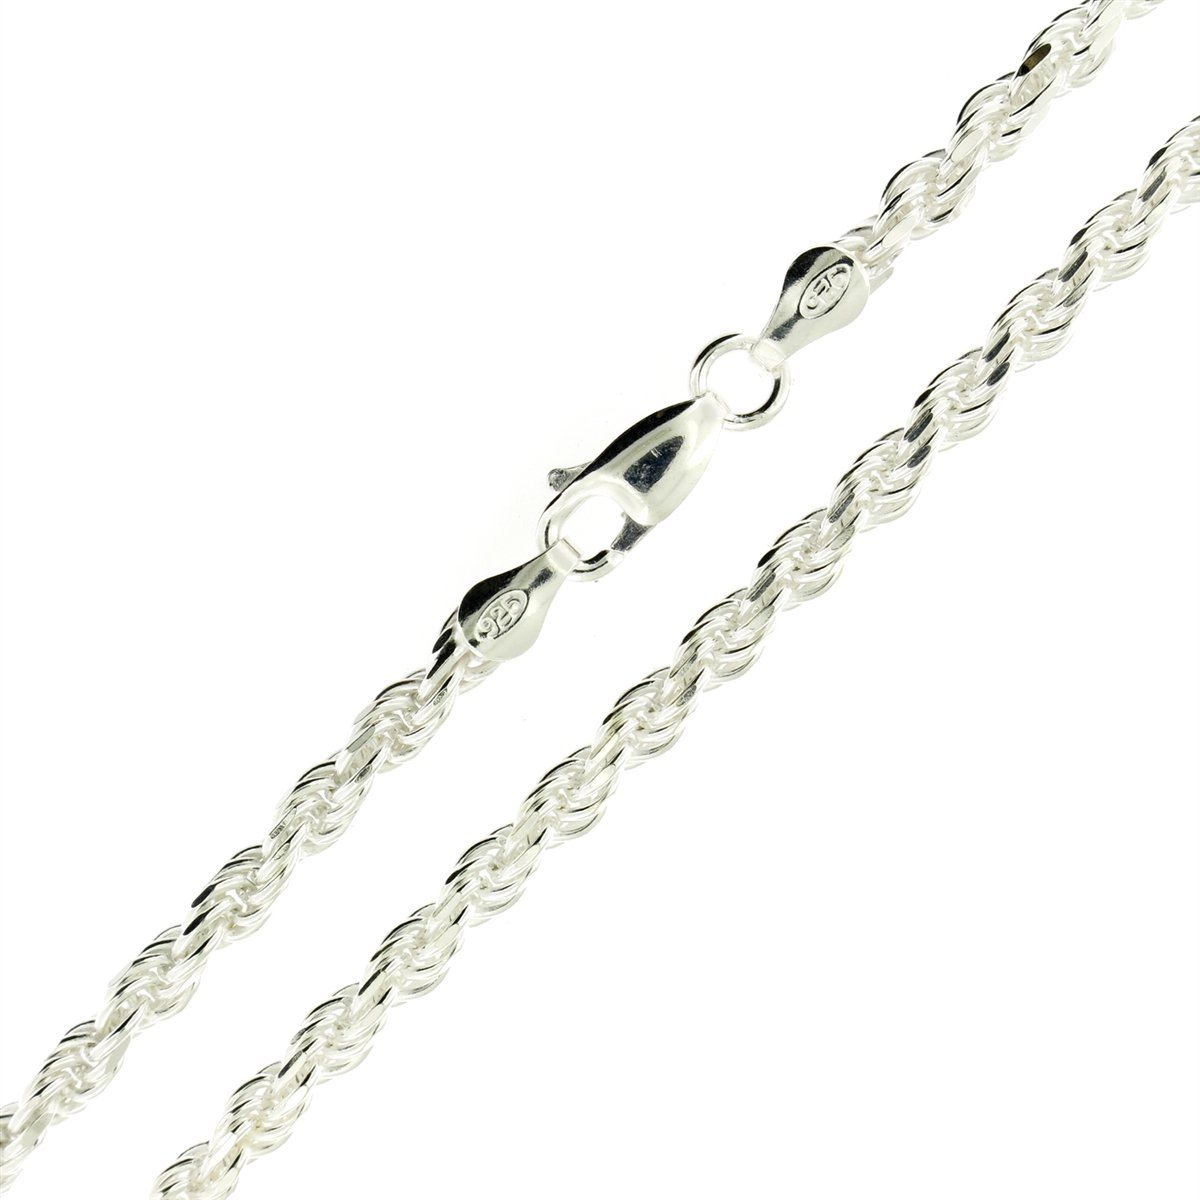 Twist-Rope 3.5mm Diamond-Cut Italian Chain Bracelet in 925 Italy Sterling Silver